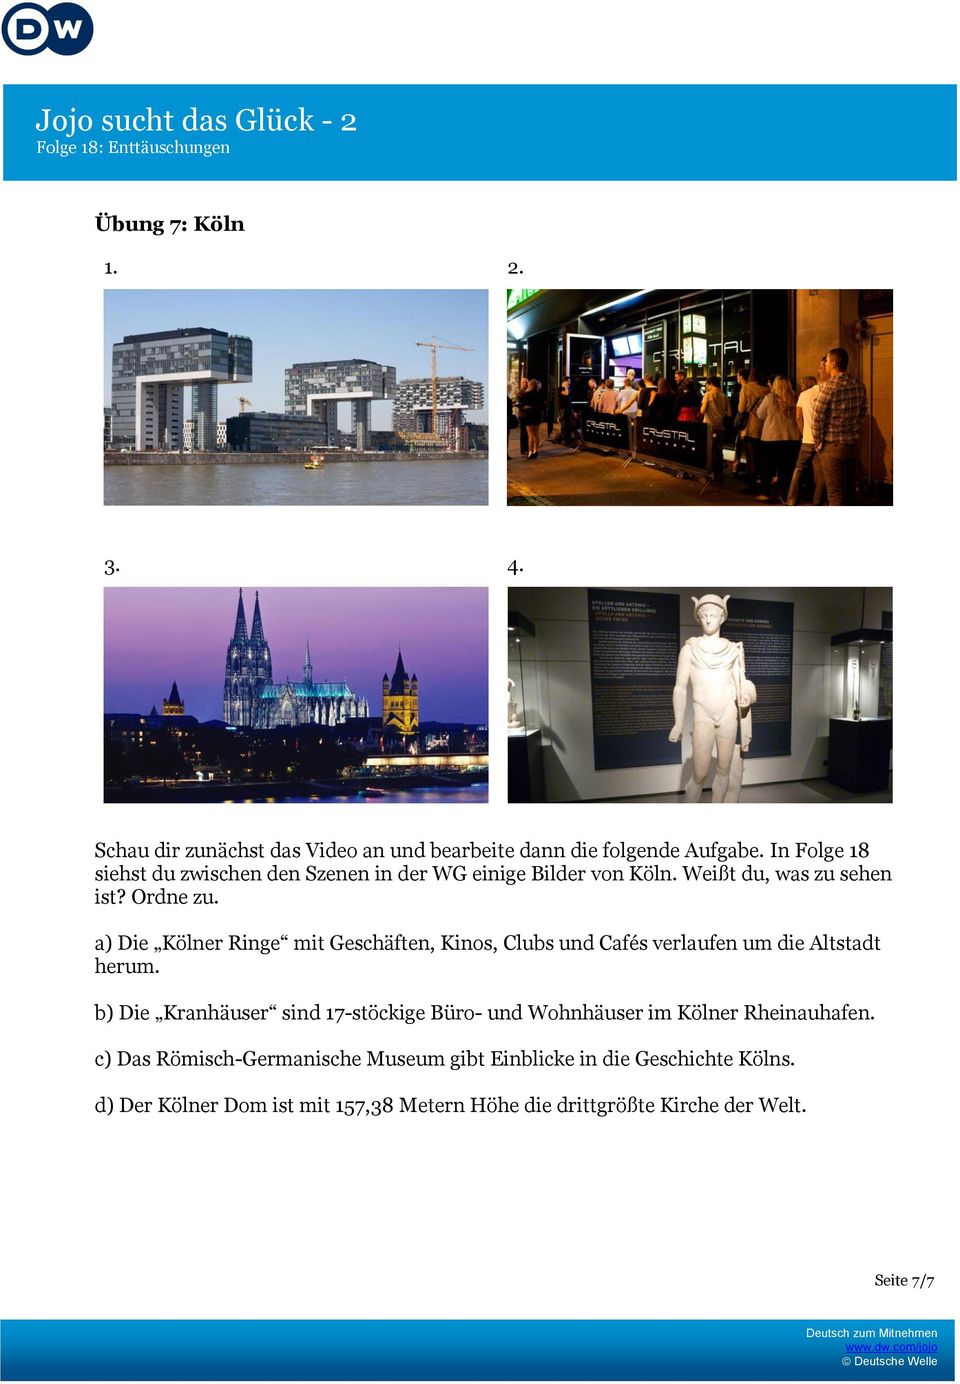 a) Die Kölner Ringe mit Geschäften, Kinos, Clubs und Cafés verlaufen um die Altstadt herum.